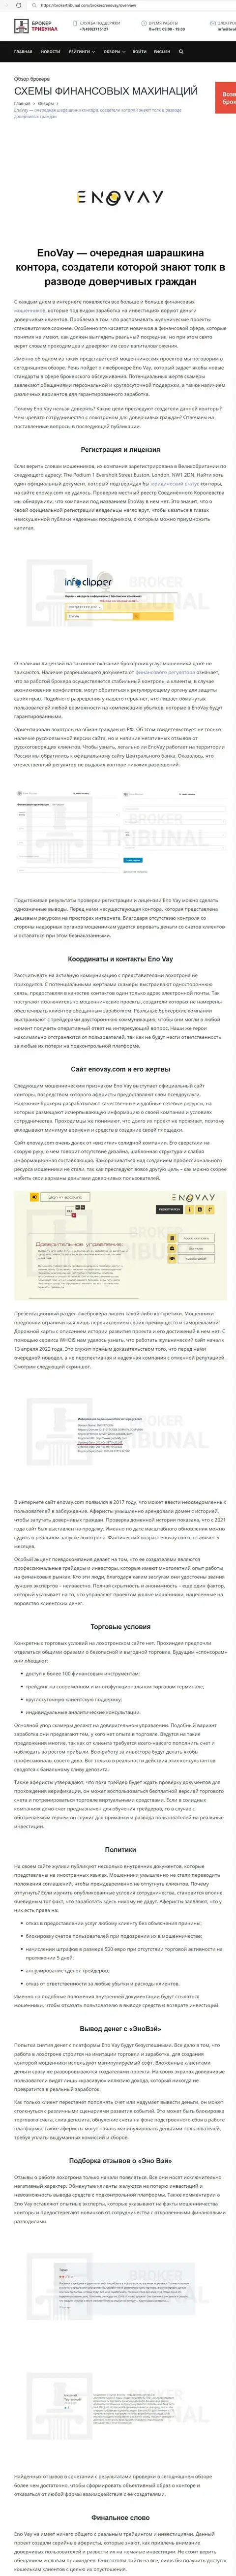 ИМЕТЬ ДЕЛО КРАЙНЕ РИСКОВАННО - публикация с обзором мошенничества EnoVay